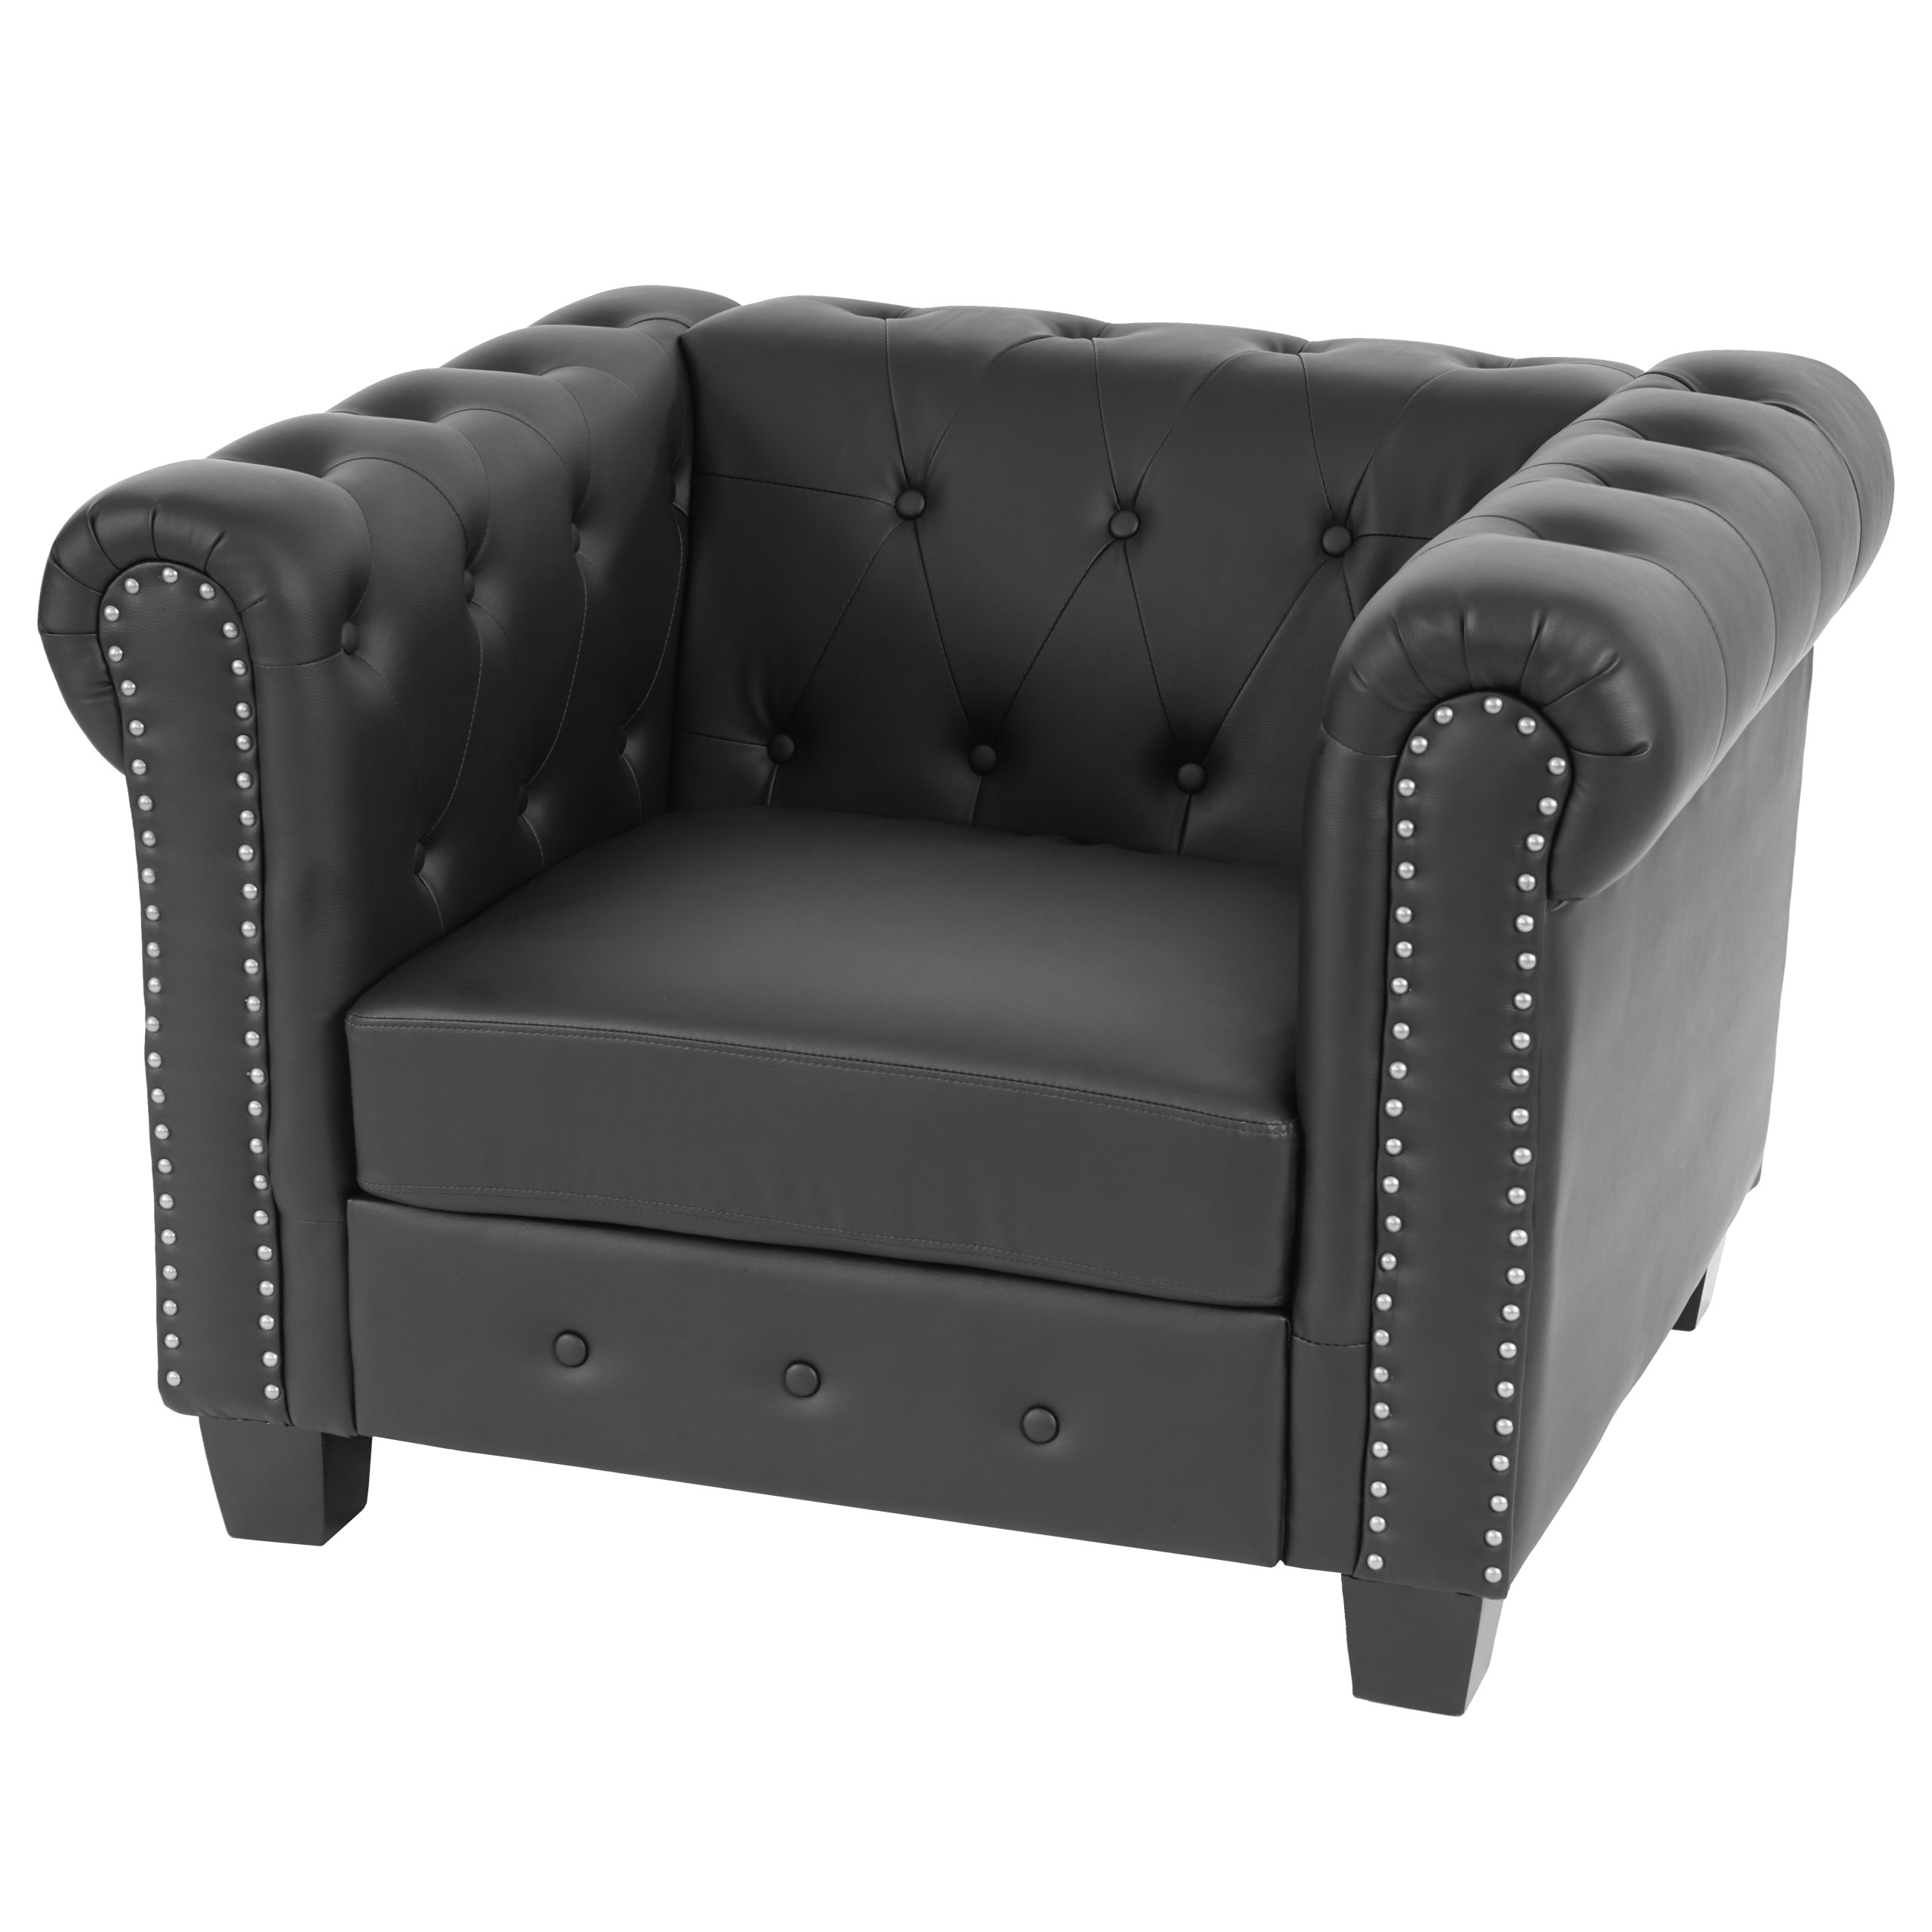 Luxus Sessel Chesterfield, Loungesessel, Kunstleder runde oder eckige Füße  | eBay